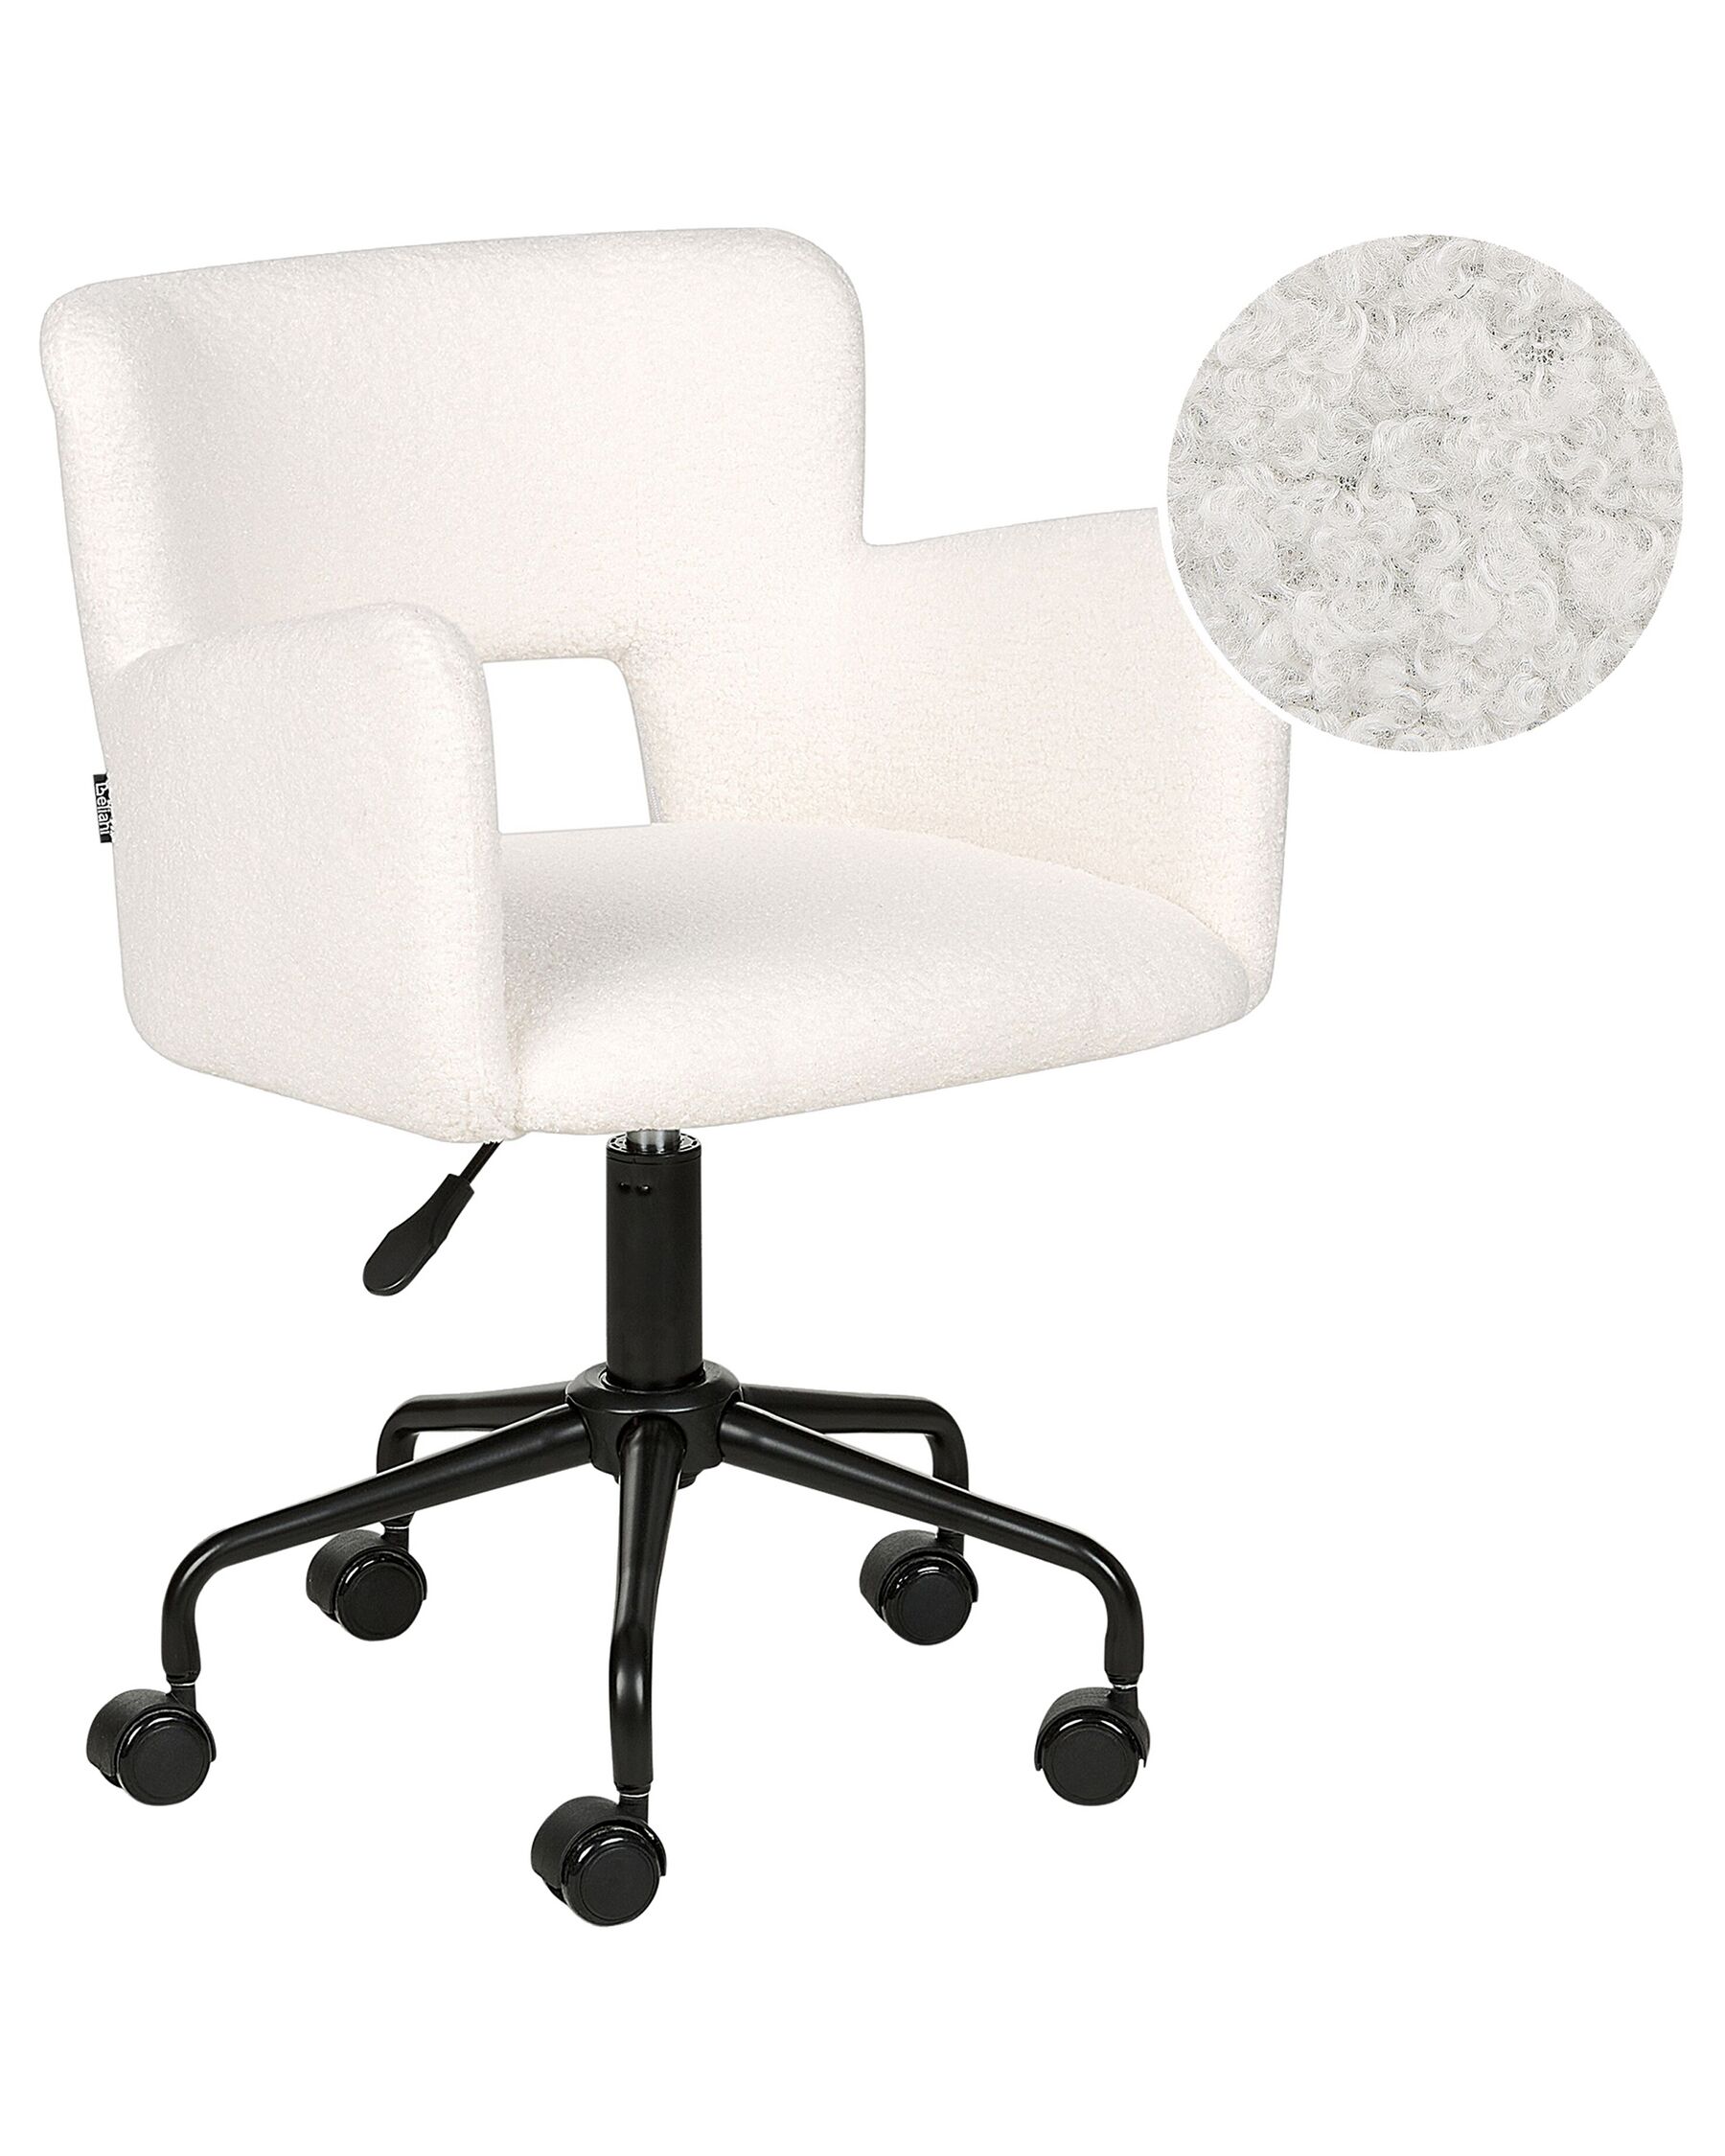 Kancelářská židle s buklé čalouněním bílá SANILAC_896626